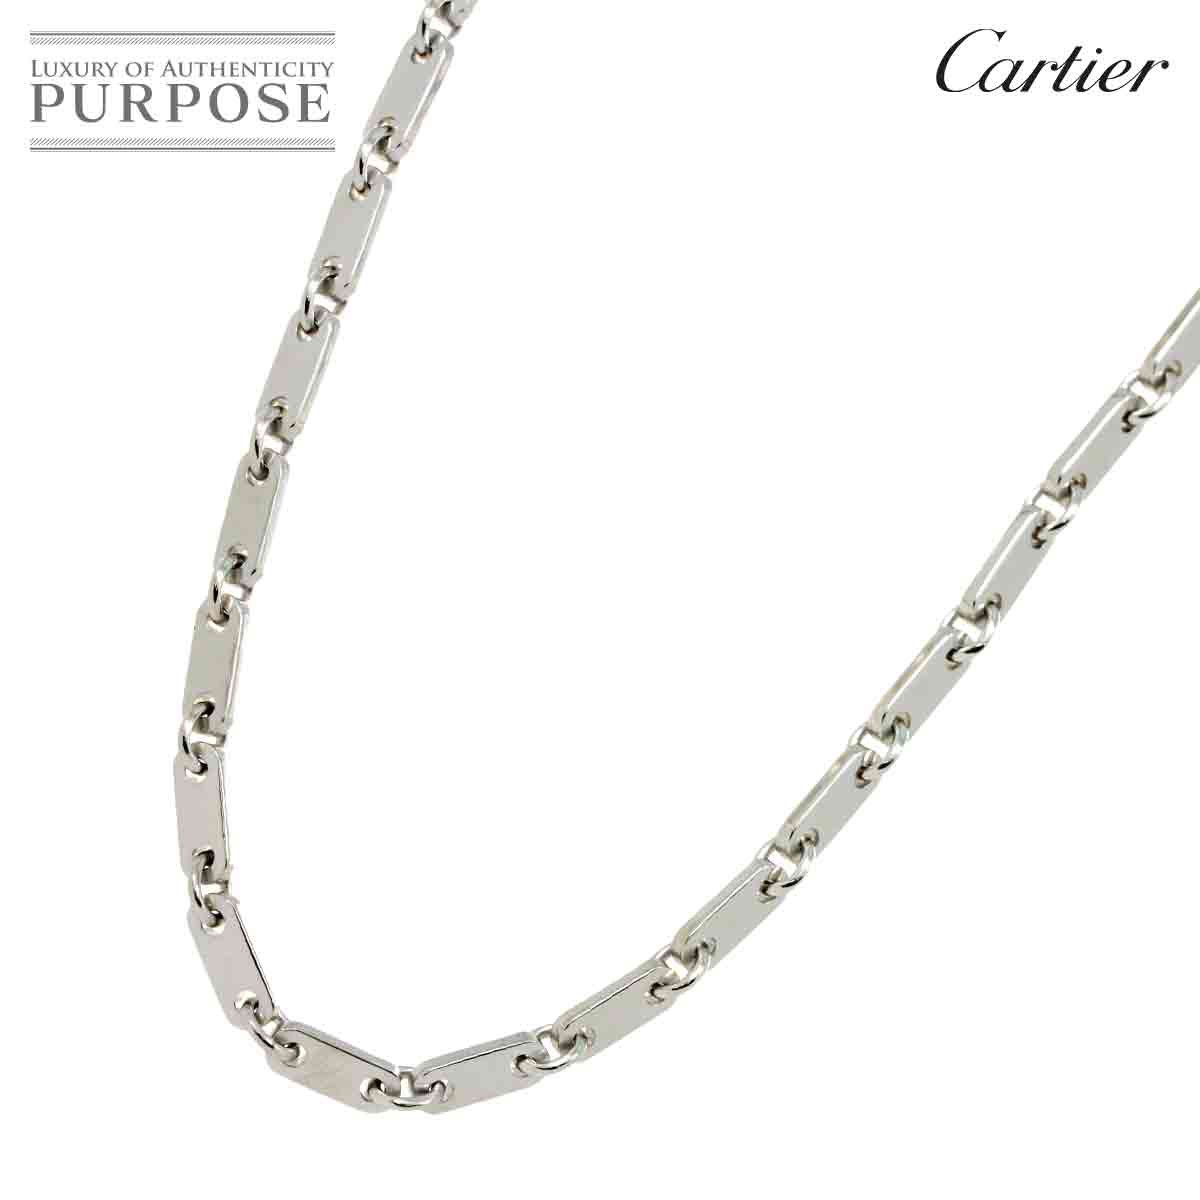 yVilz JeBG Cartier tBK lbNX 45cm K18 WG zCgS[h 750 Necklace yؖtzyÁz